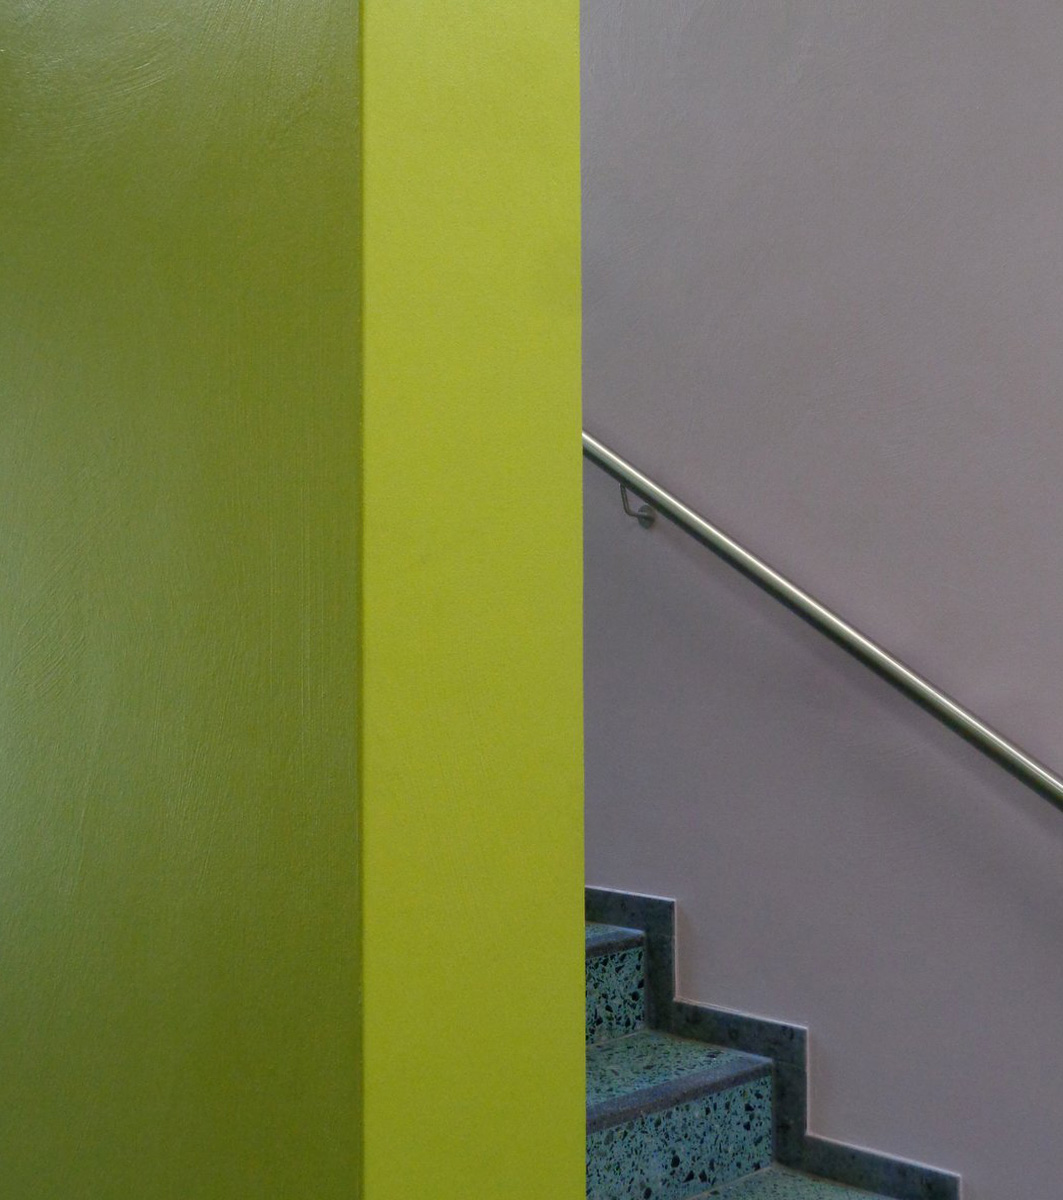 Farbgestaltung im Innern einer Schule Wandoberflächen